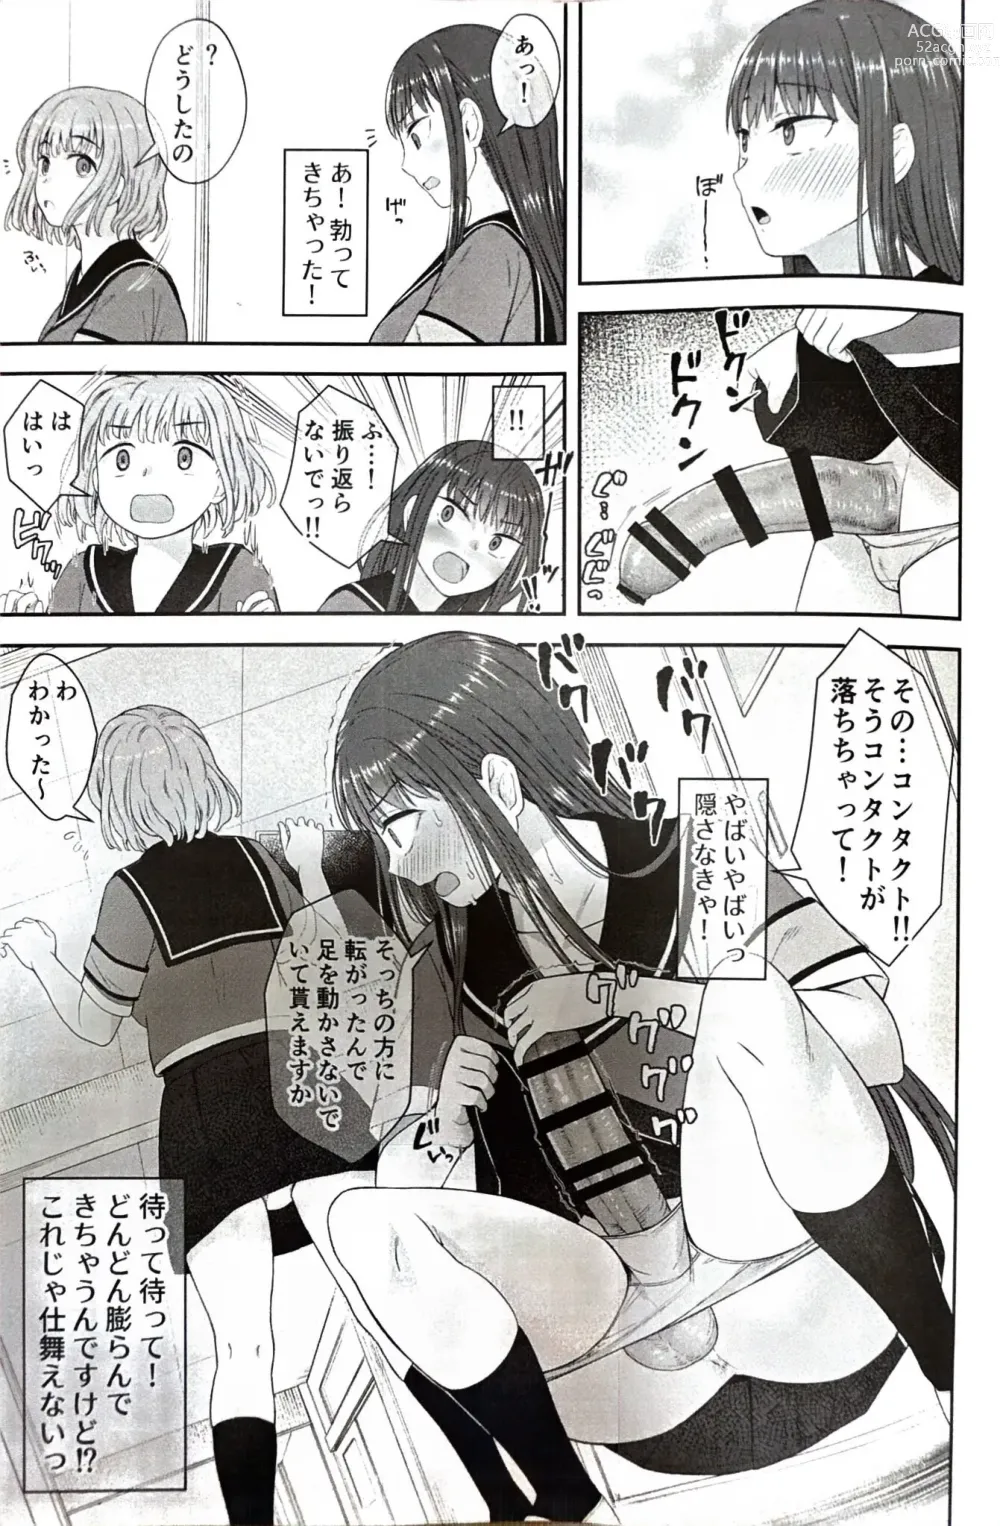 Page 8 of doujinshi Danseiki Roshutsu Jidori-han no Shoutai wa Kanojo dake ga Shitteiru.